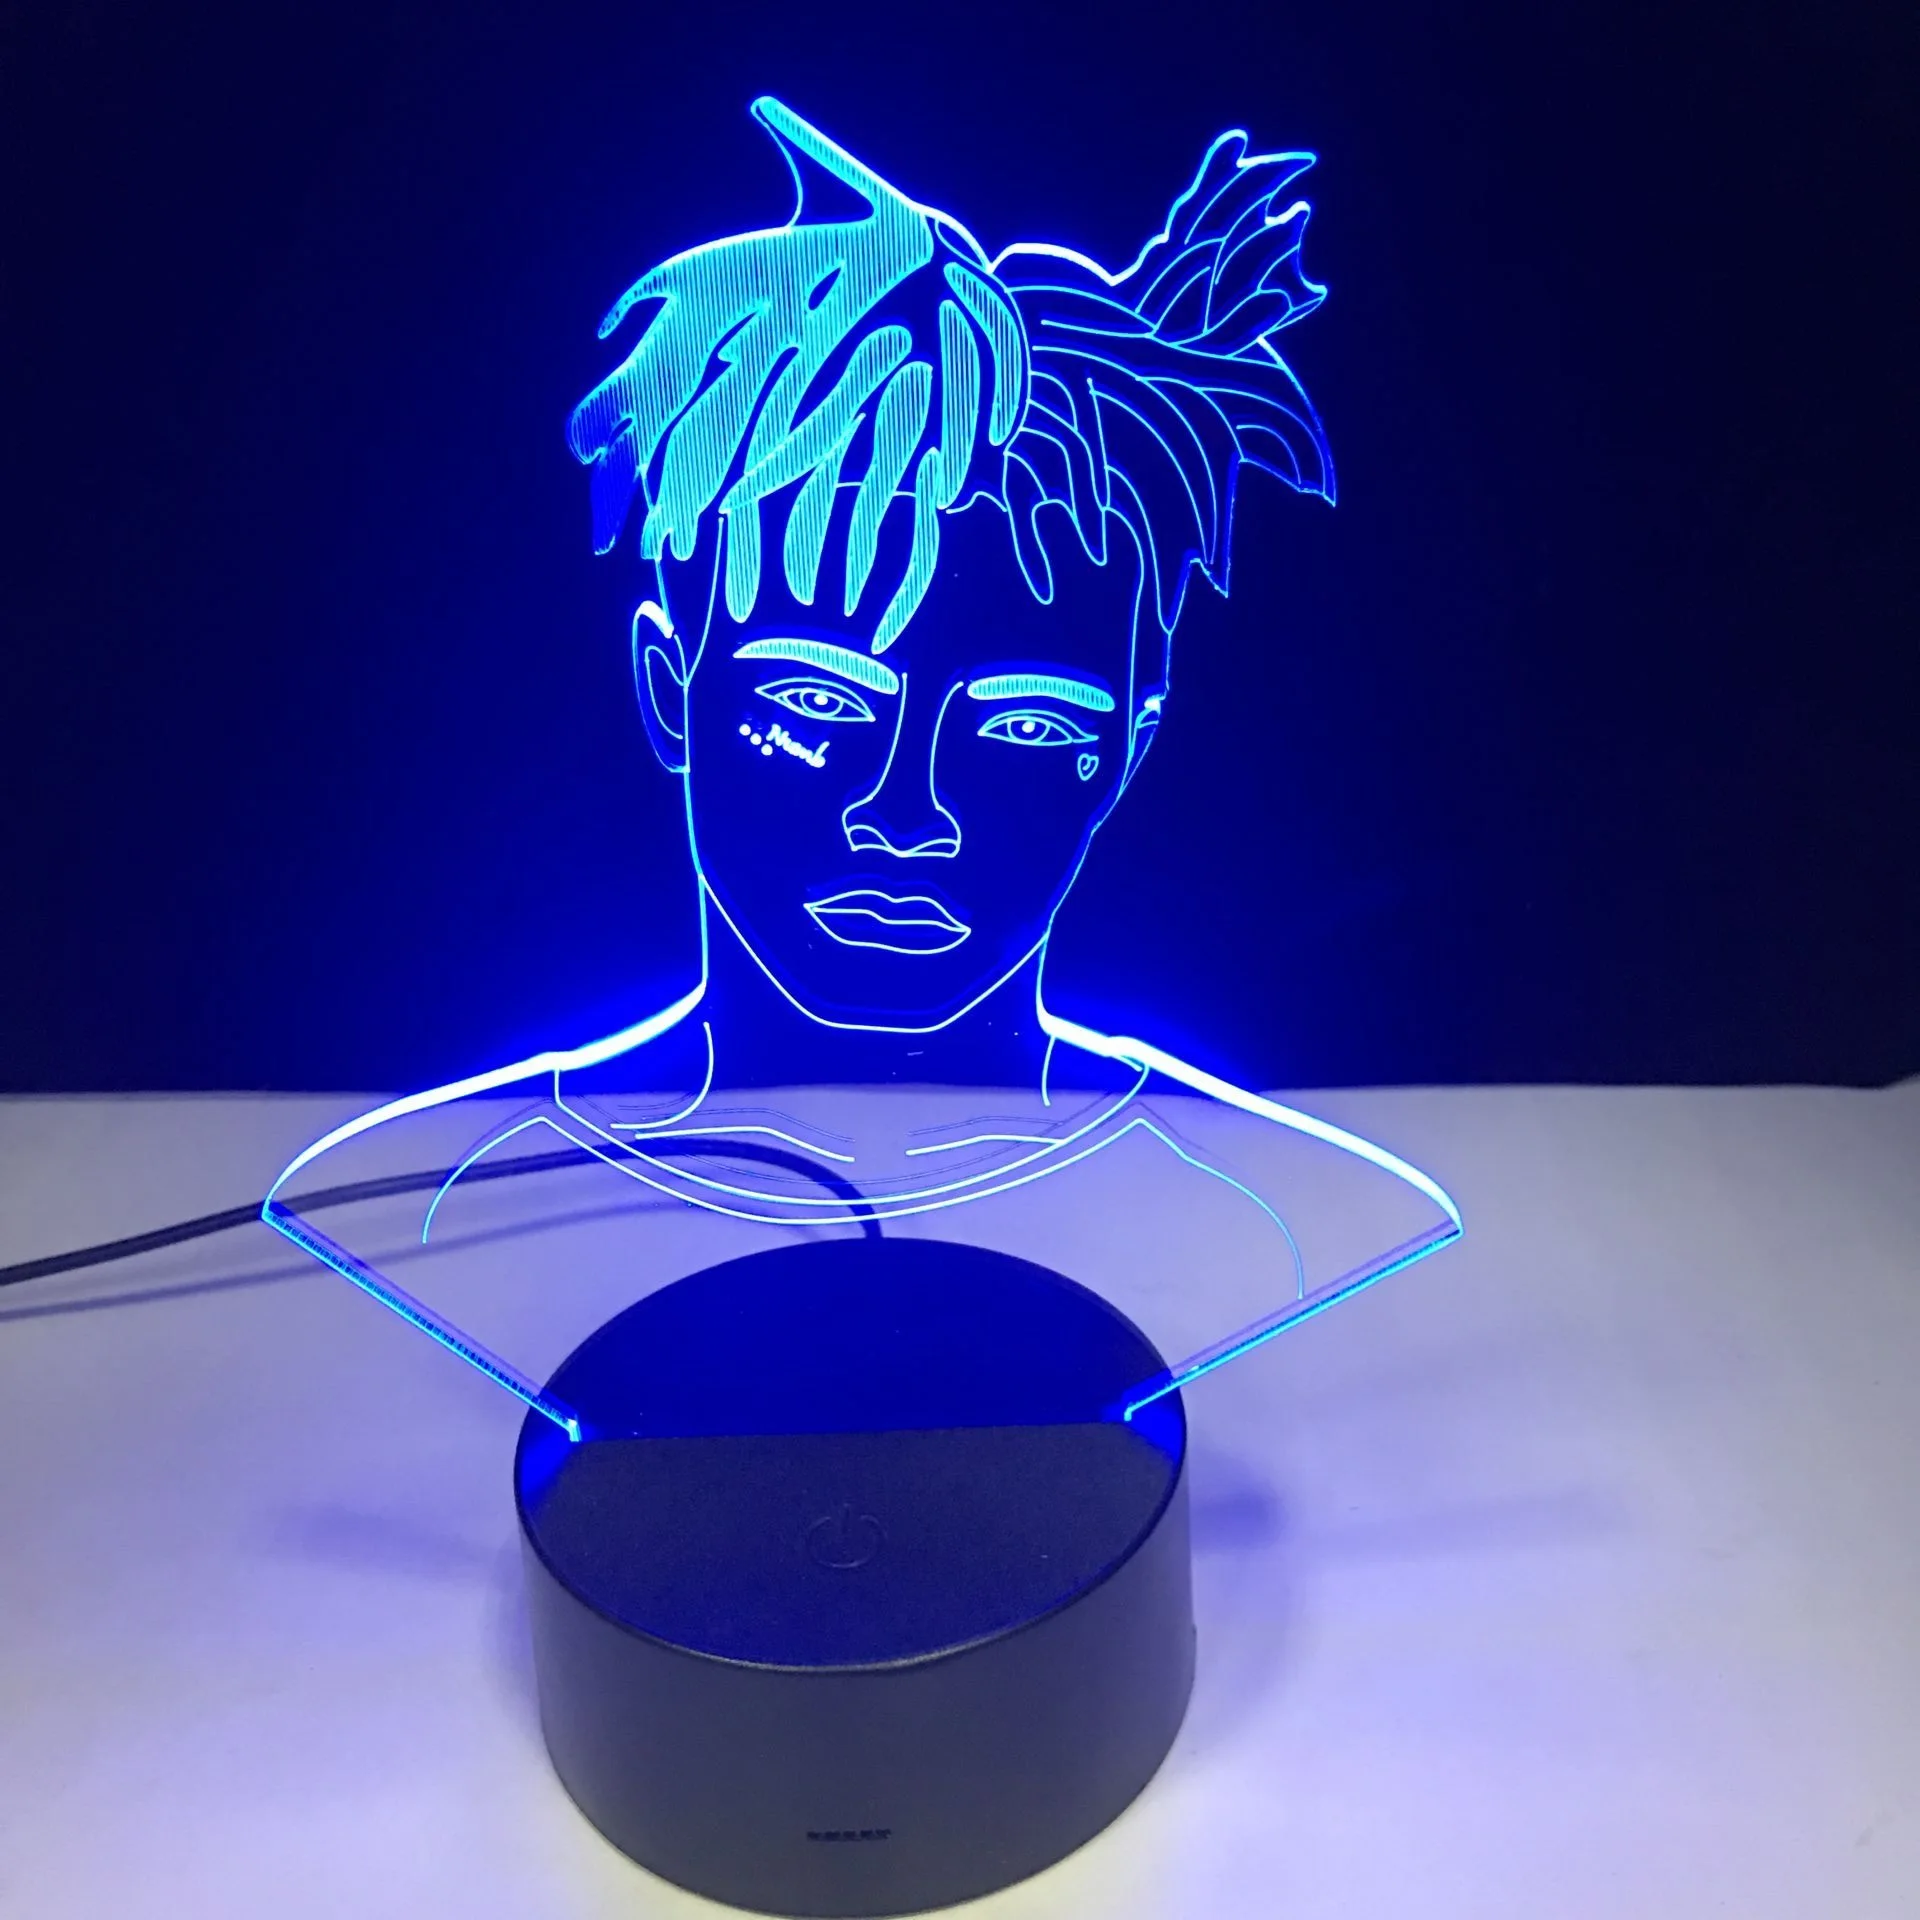 The Raper Singer XXX Tentacion рисунок 3D иллюзия Лампа украшения ночные светильники Jahseh Dwayne Ricardo Onfroy Вентилятор Сувенир подарки